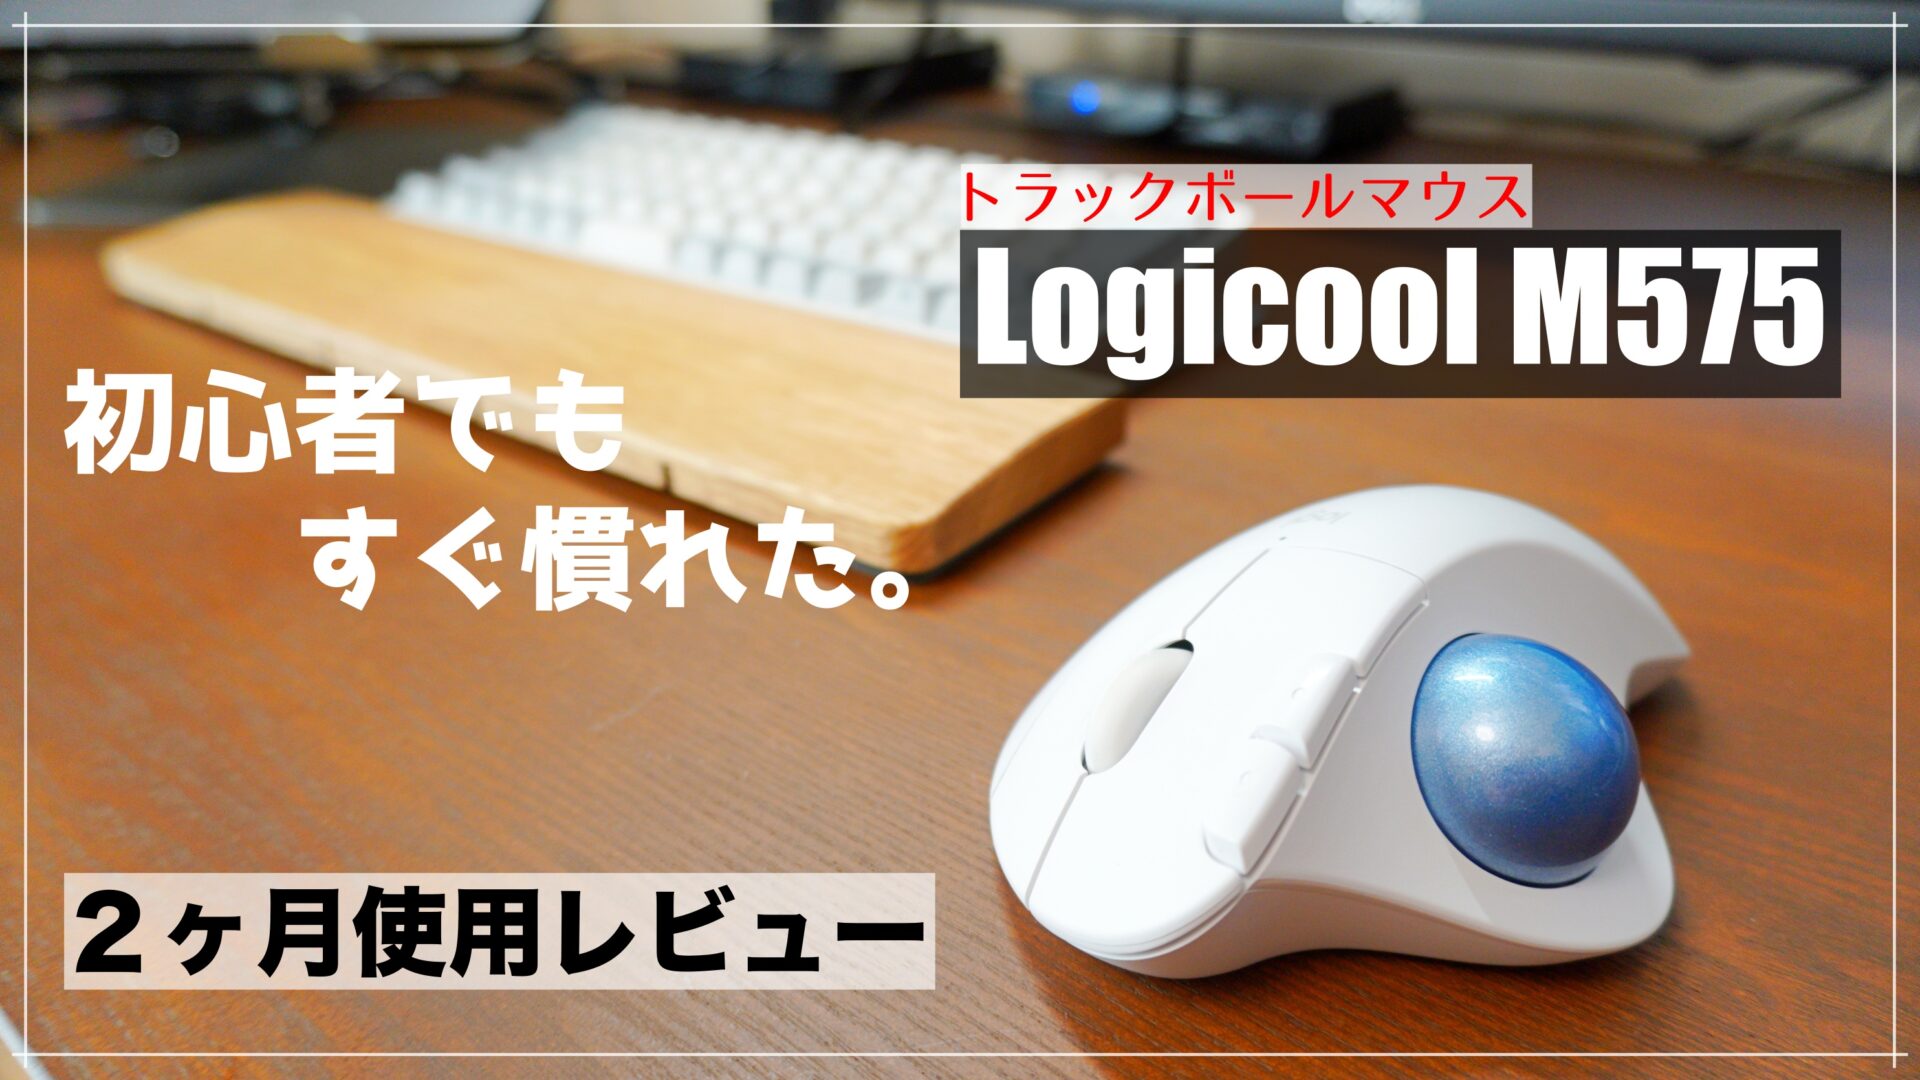 Logicool M575【購入レビュー】トラックボールマウス初心者が使った ...